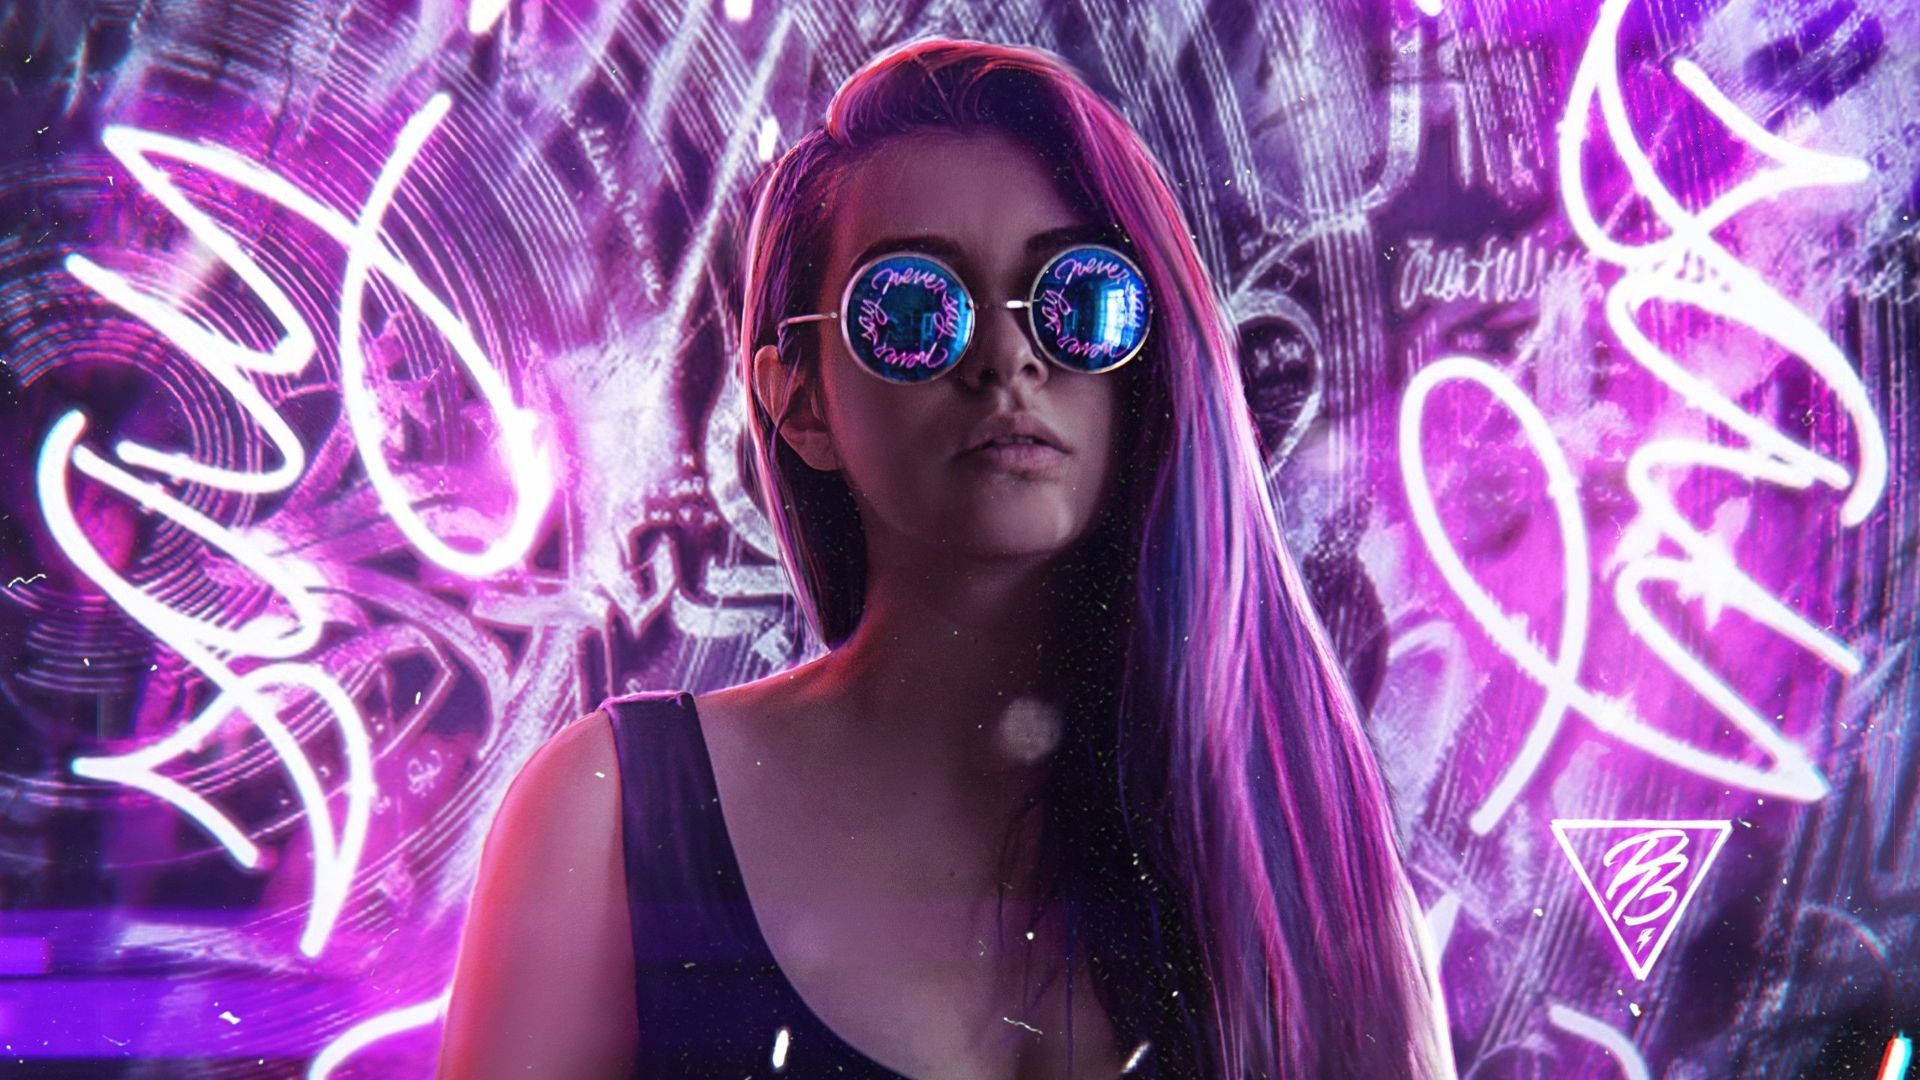 Neon Purple Cute Woman Wallpaper